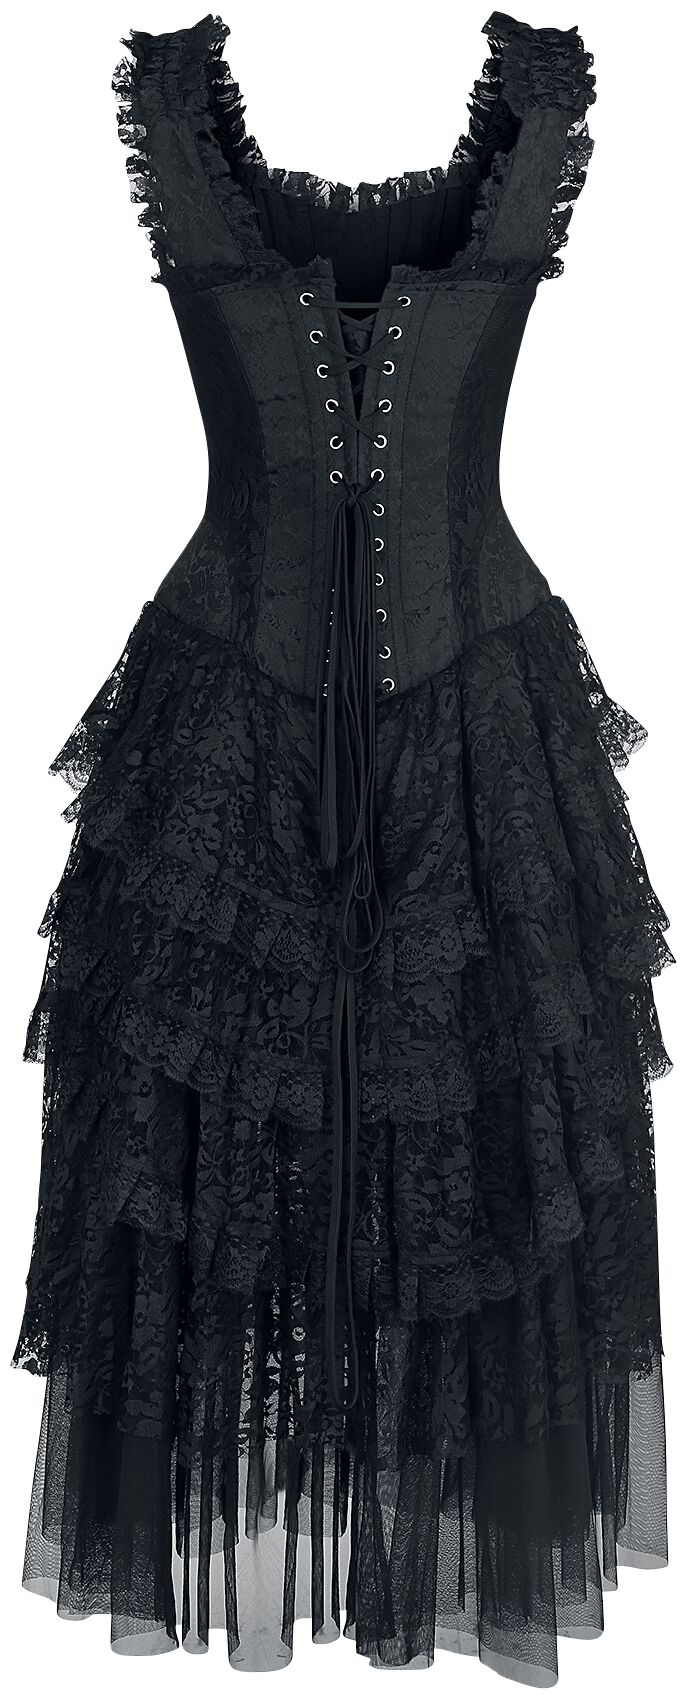 Schwarzes Gothic Kleid mit Korsage und Volant-Rock aus Spitze und Tüll ...